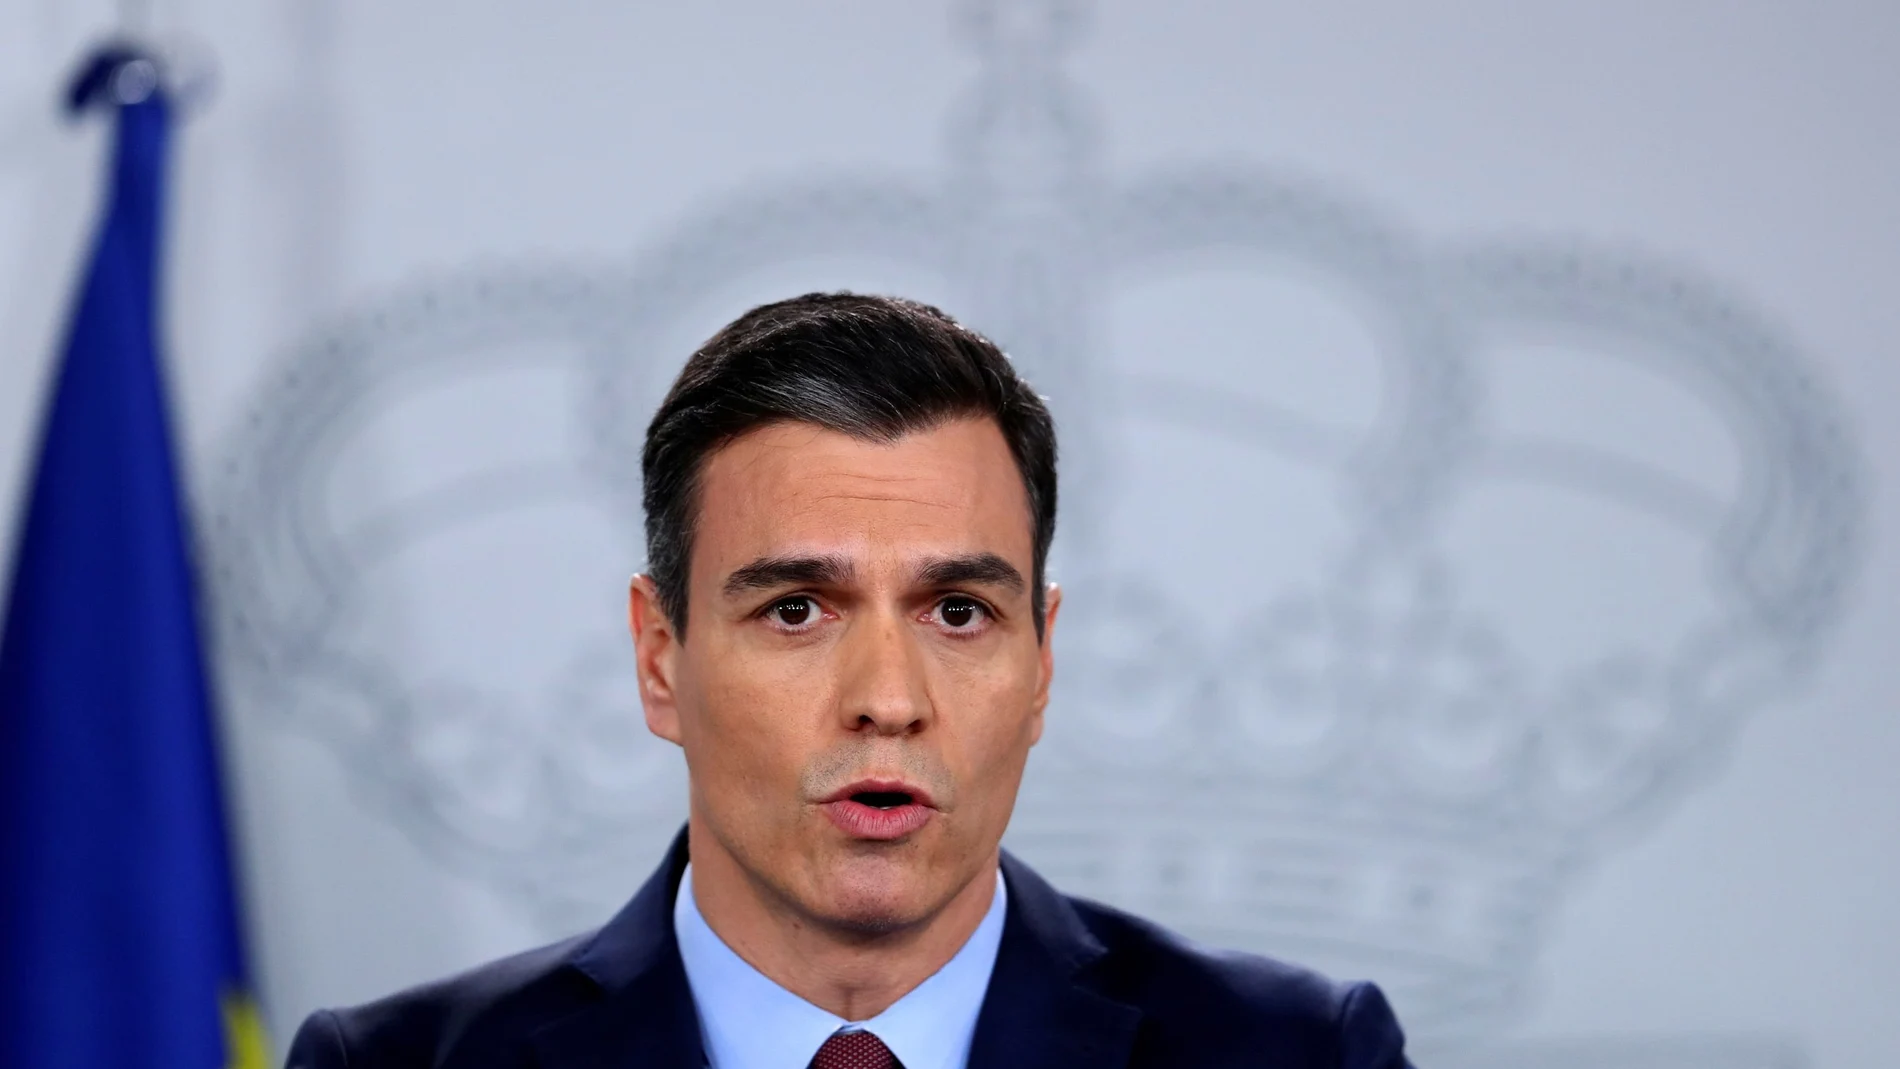 El presidente del Gobierno, Pedro Sánchez, compareció ayer para anunciar otra inyección económica para la recuperación